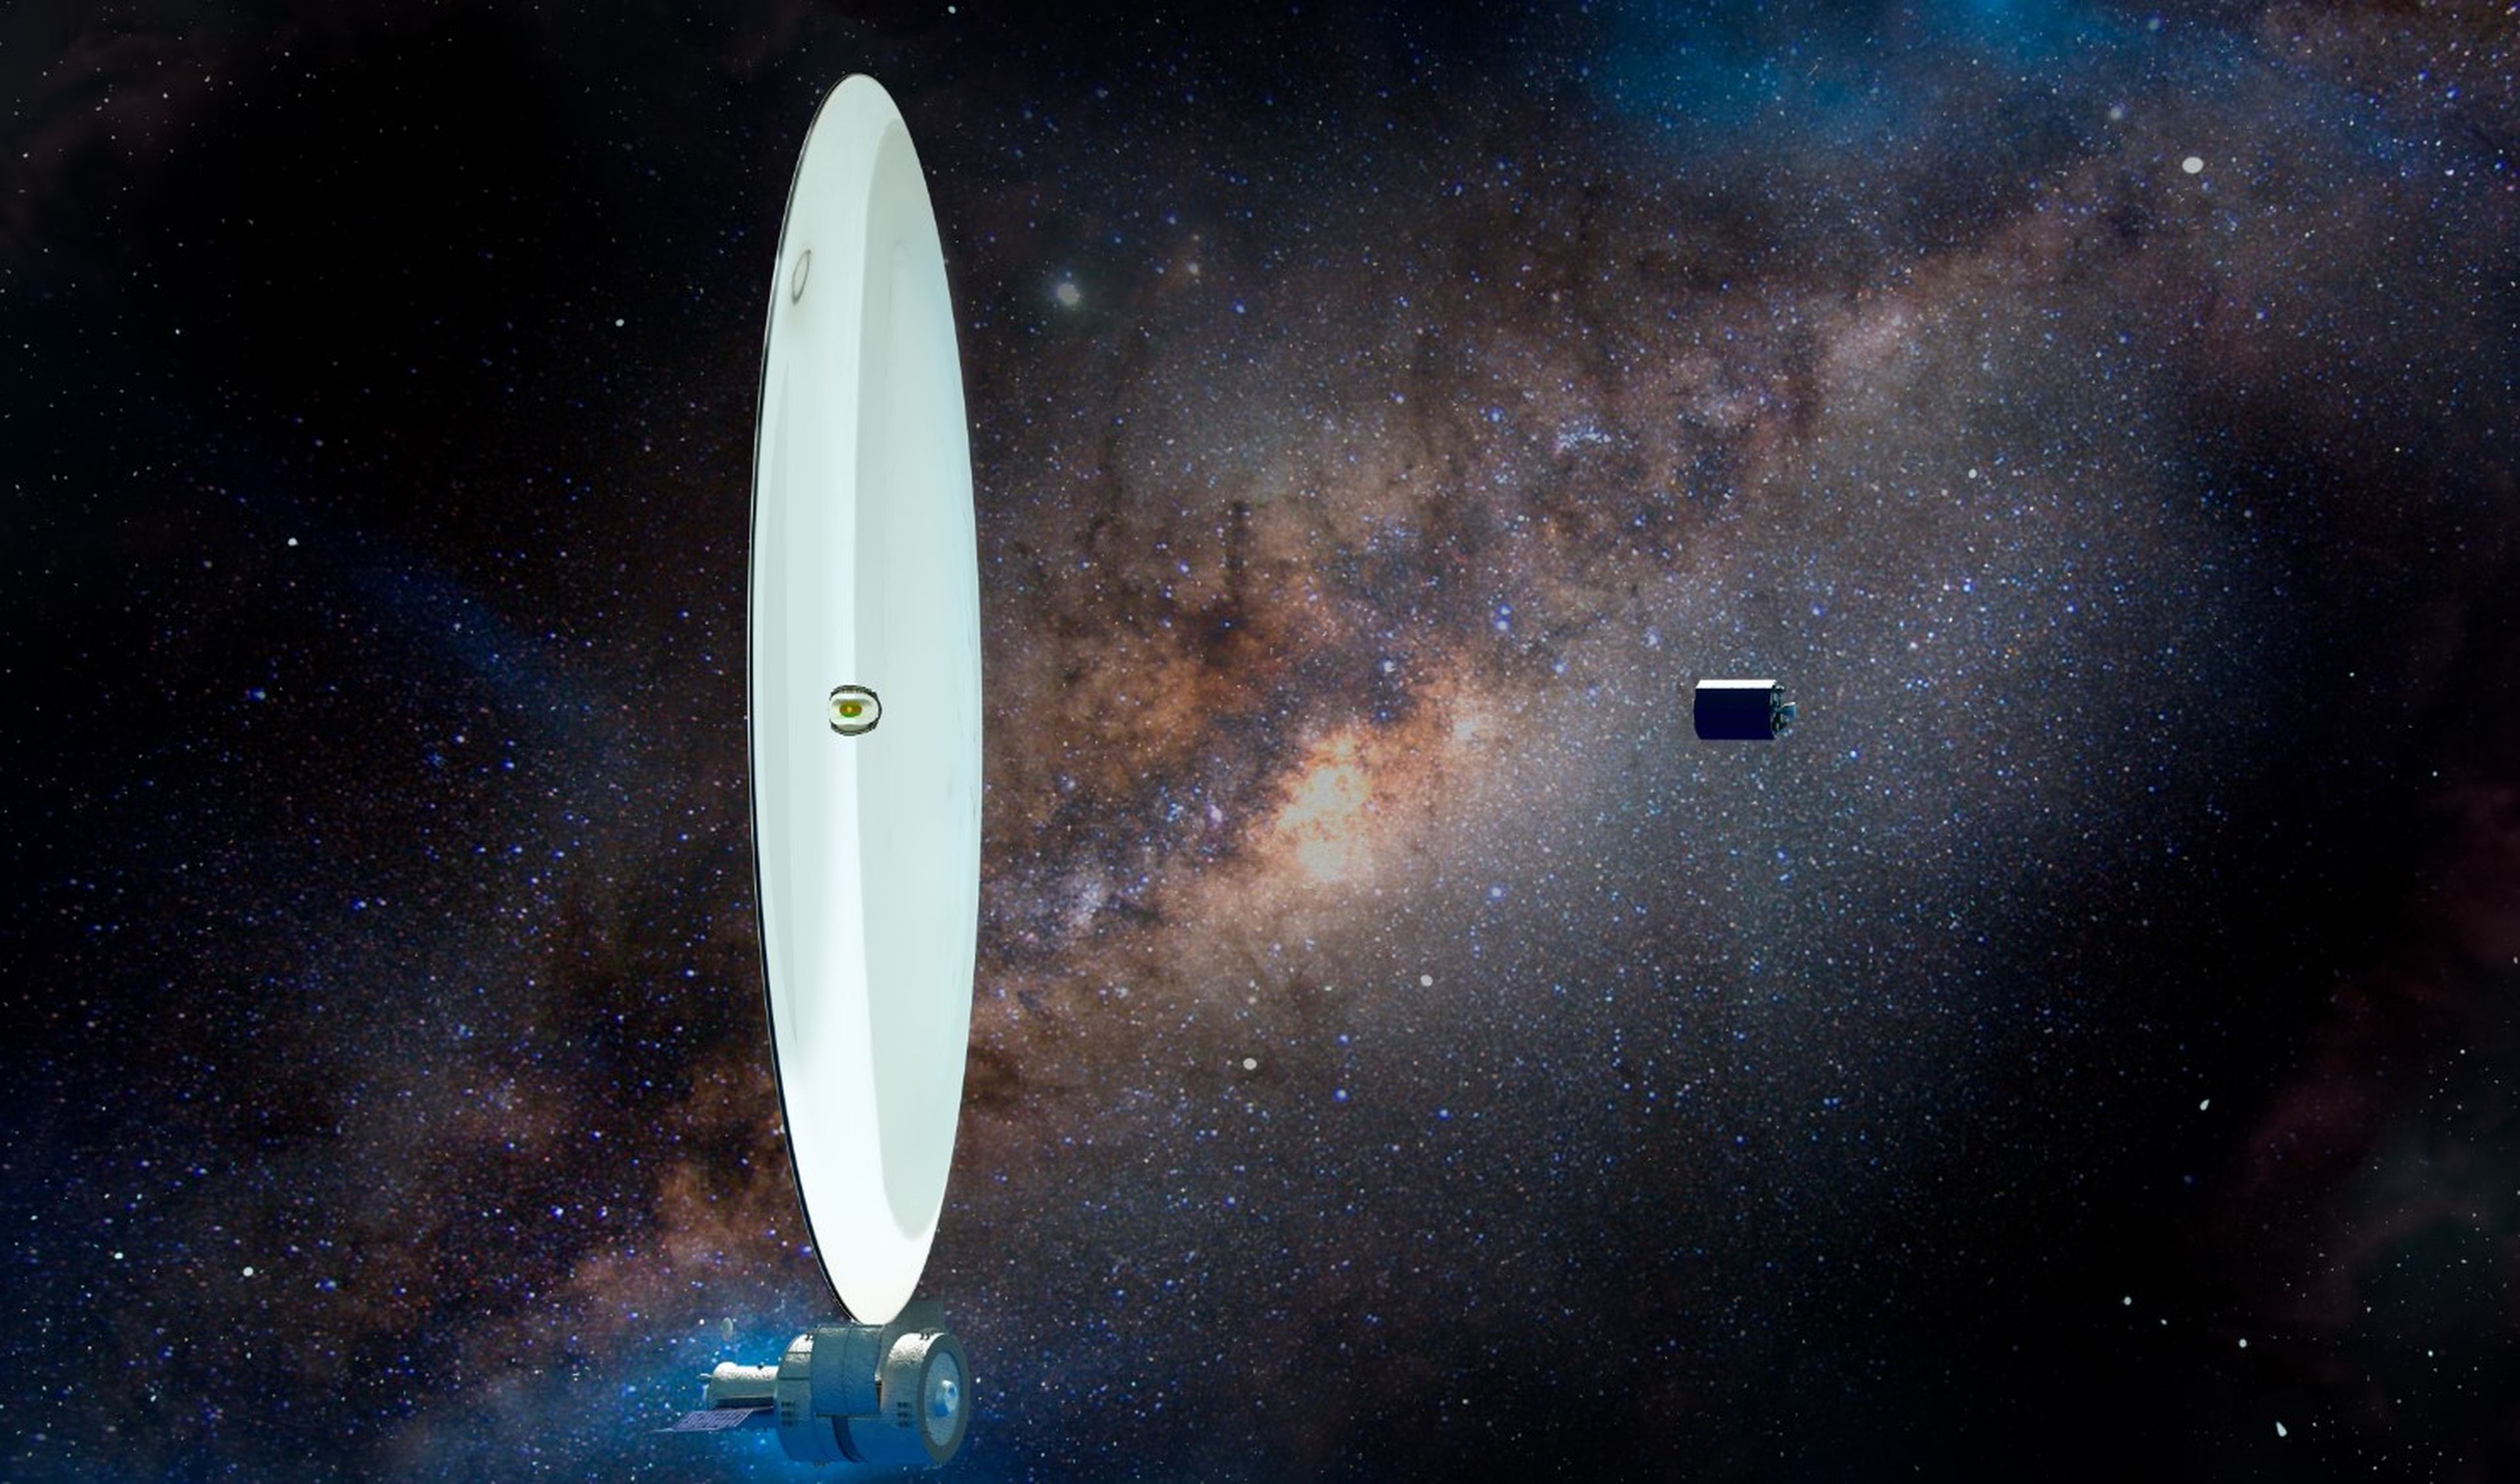 La NASA ya trabaja un sustituto que dejarÃ¡ al James Webb a la altura de unos prismÃ¡ticos